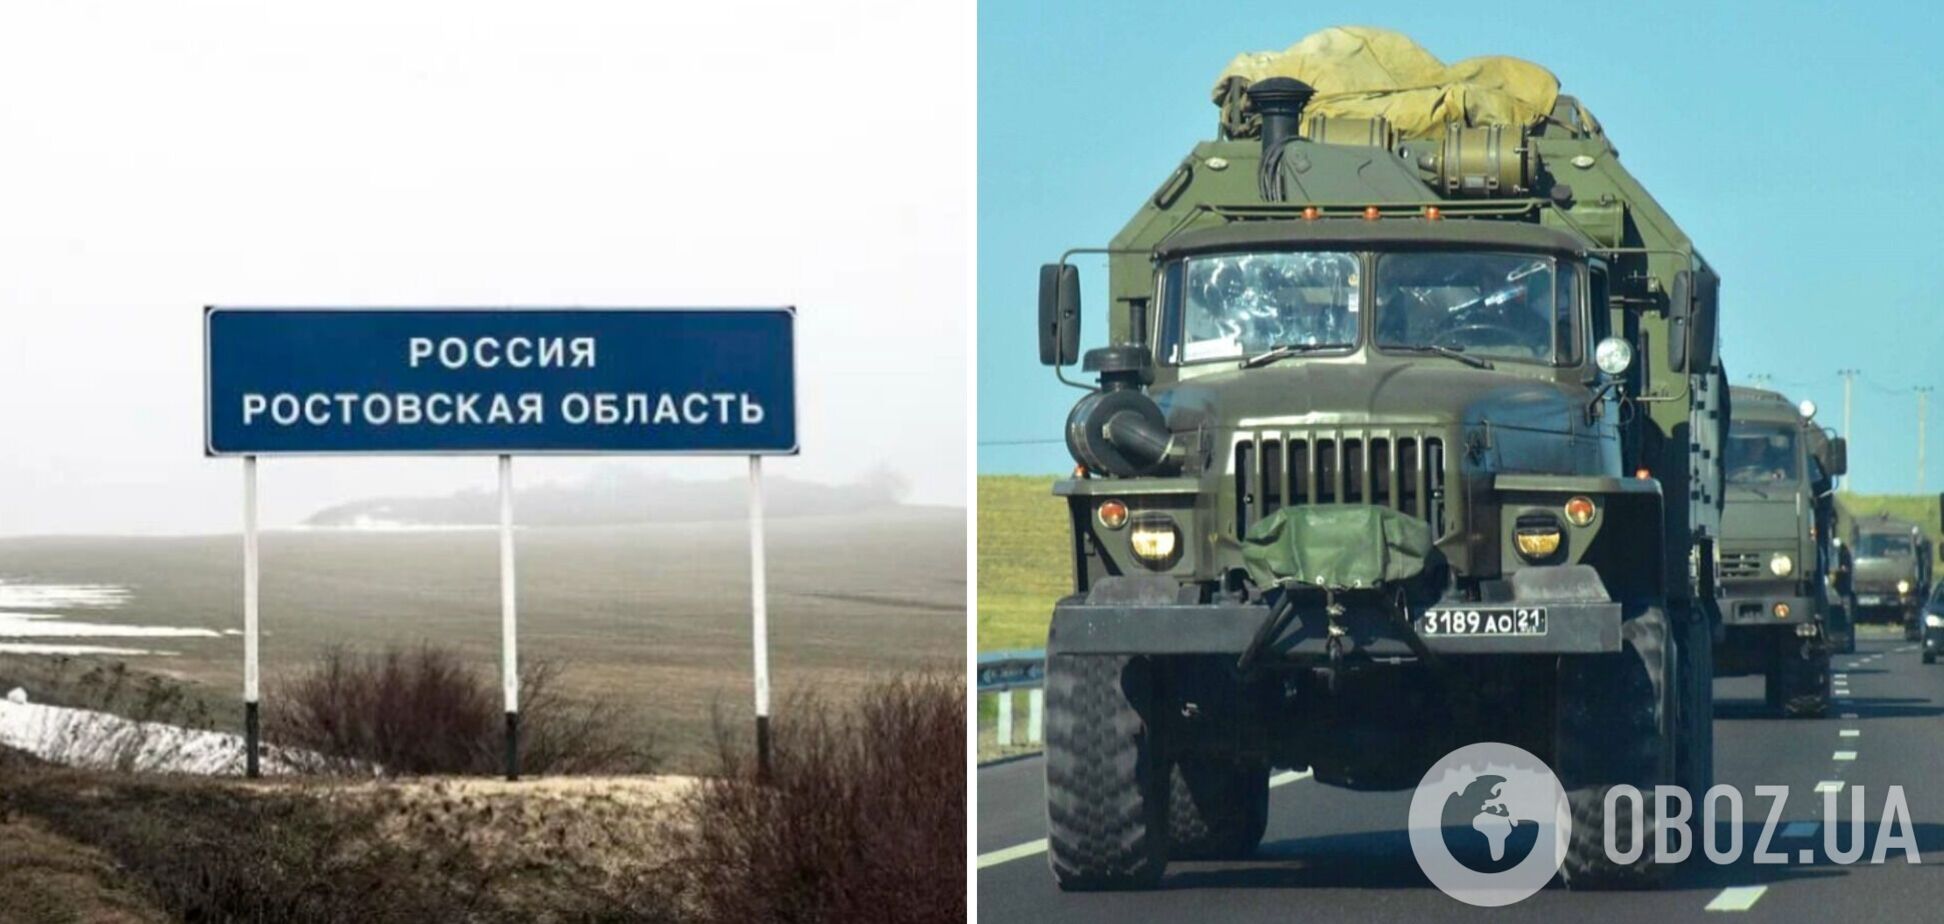 Ростовська область потерпає від 'асвабадітєлєй': усій Росії приготуватися